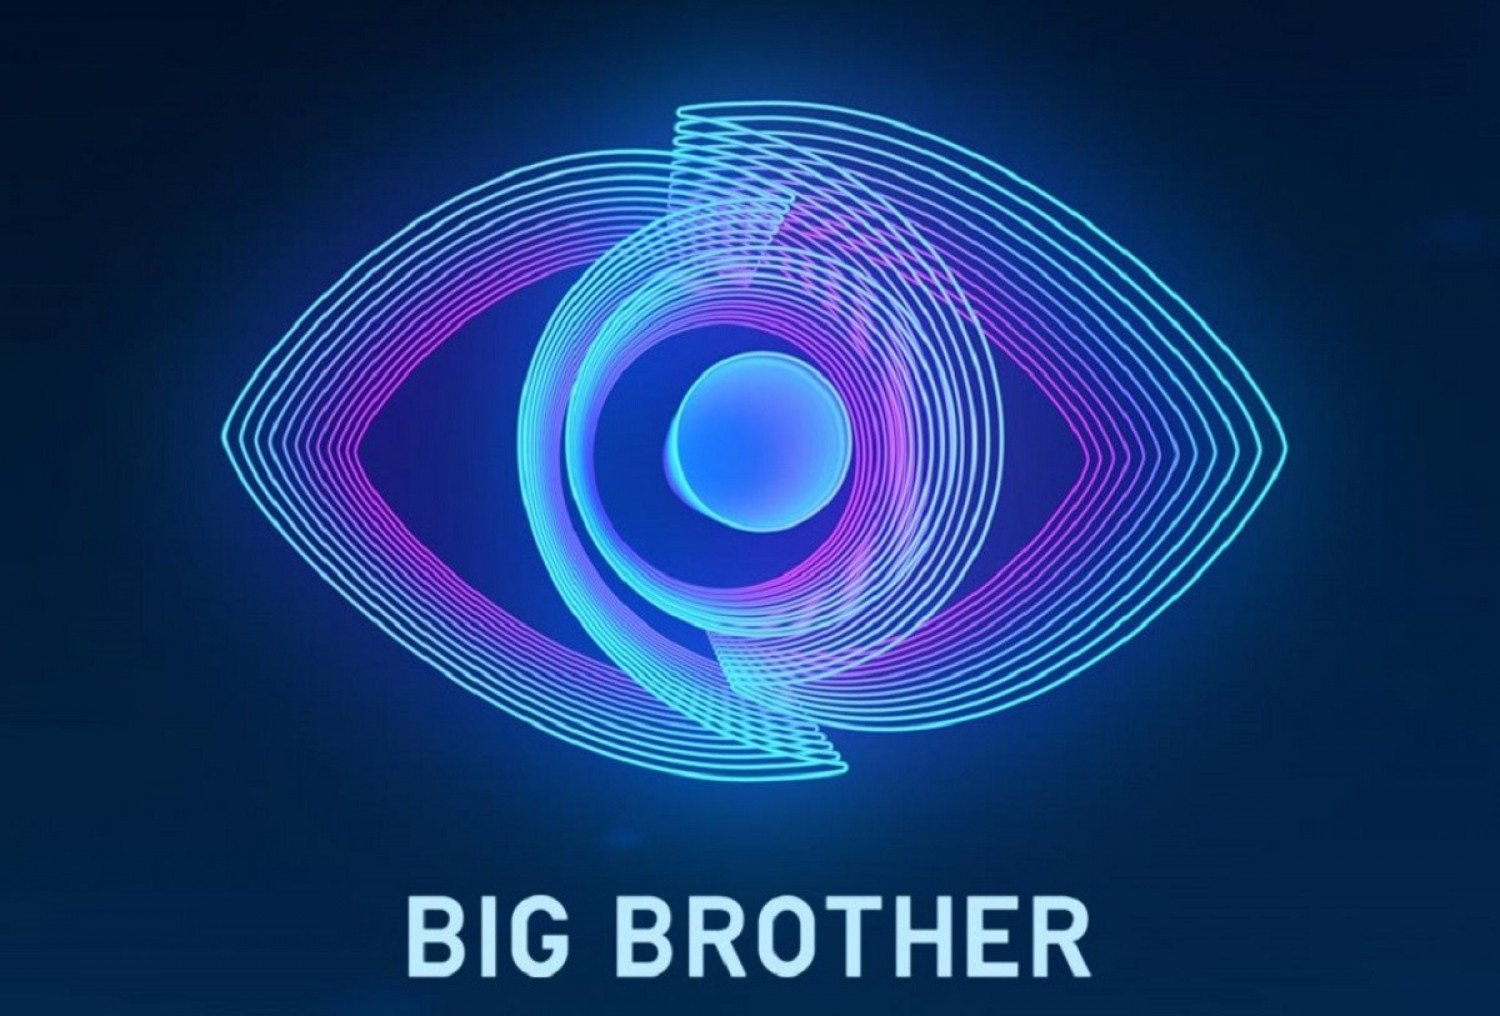 Το Big Brother της νέας εποχής ξεκινά στον ΣΚΑΙ – Οι πρώτες εικόνες από το εσωτερικό του σπιτιού